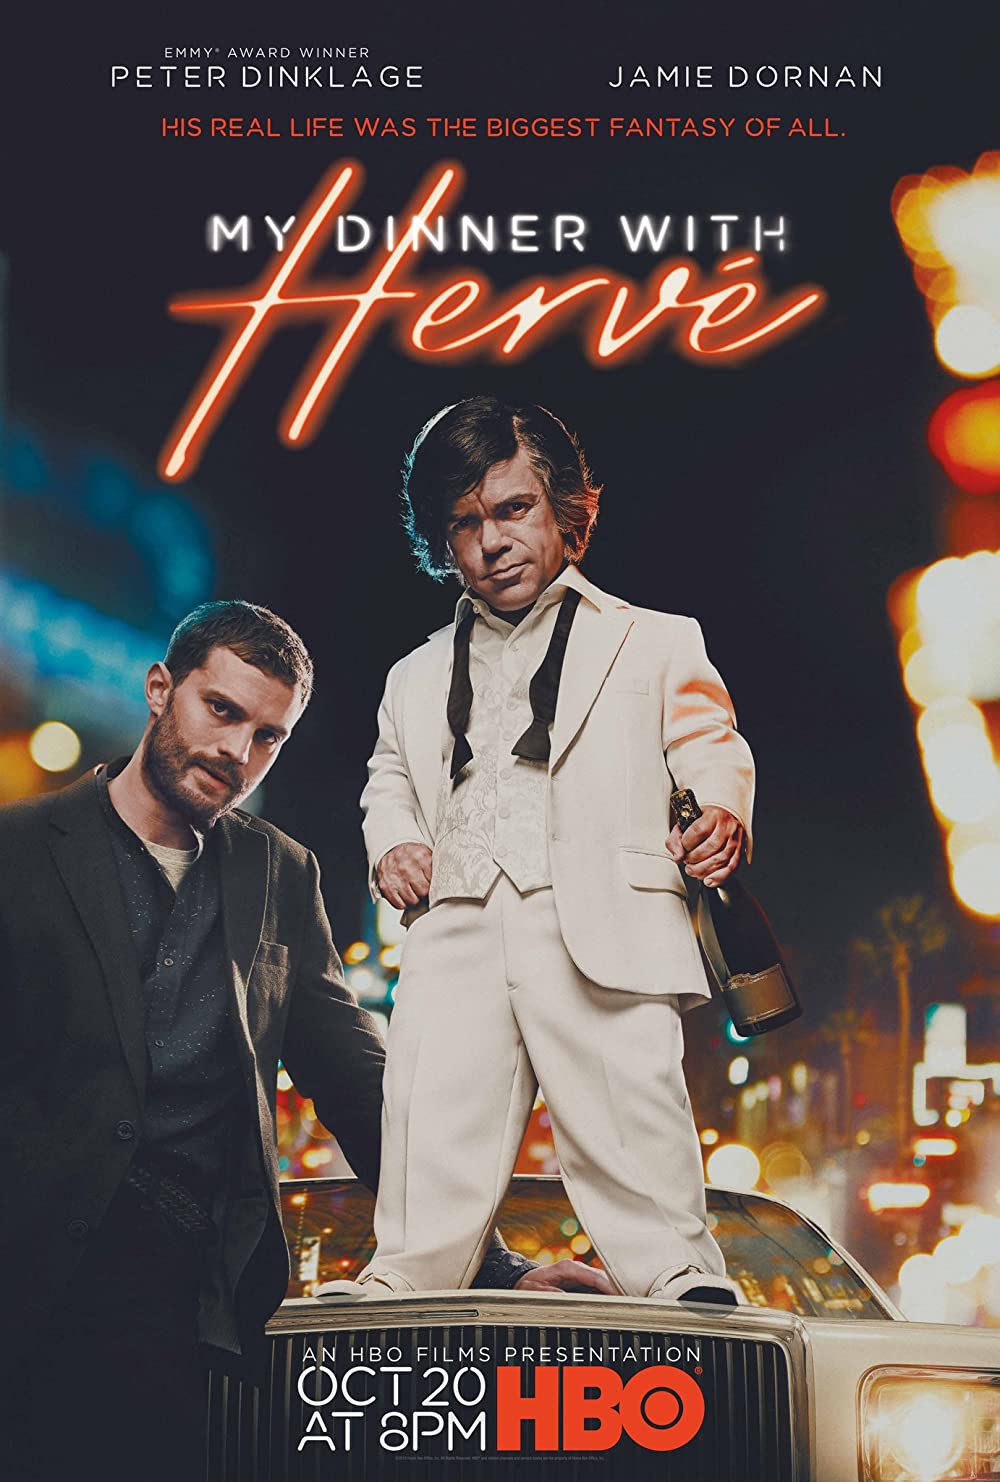 ดูหนังออนไลน์ฟรี My Dinner with Herve (2018) หนังเต็มเรื่อง หนังมาสเตอร์ ดูหนังHD ดูหนังออนไลน์ ดูหนังใหม่